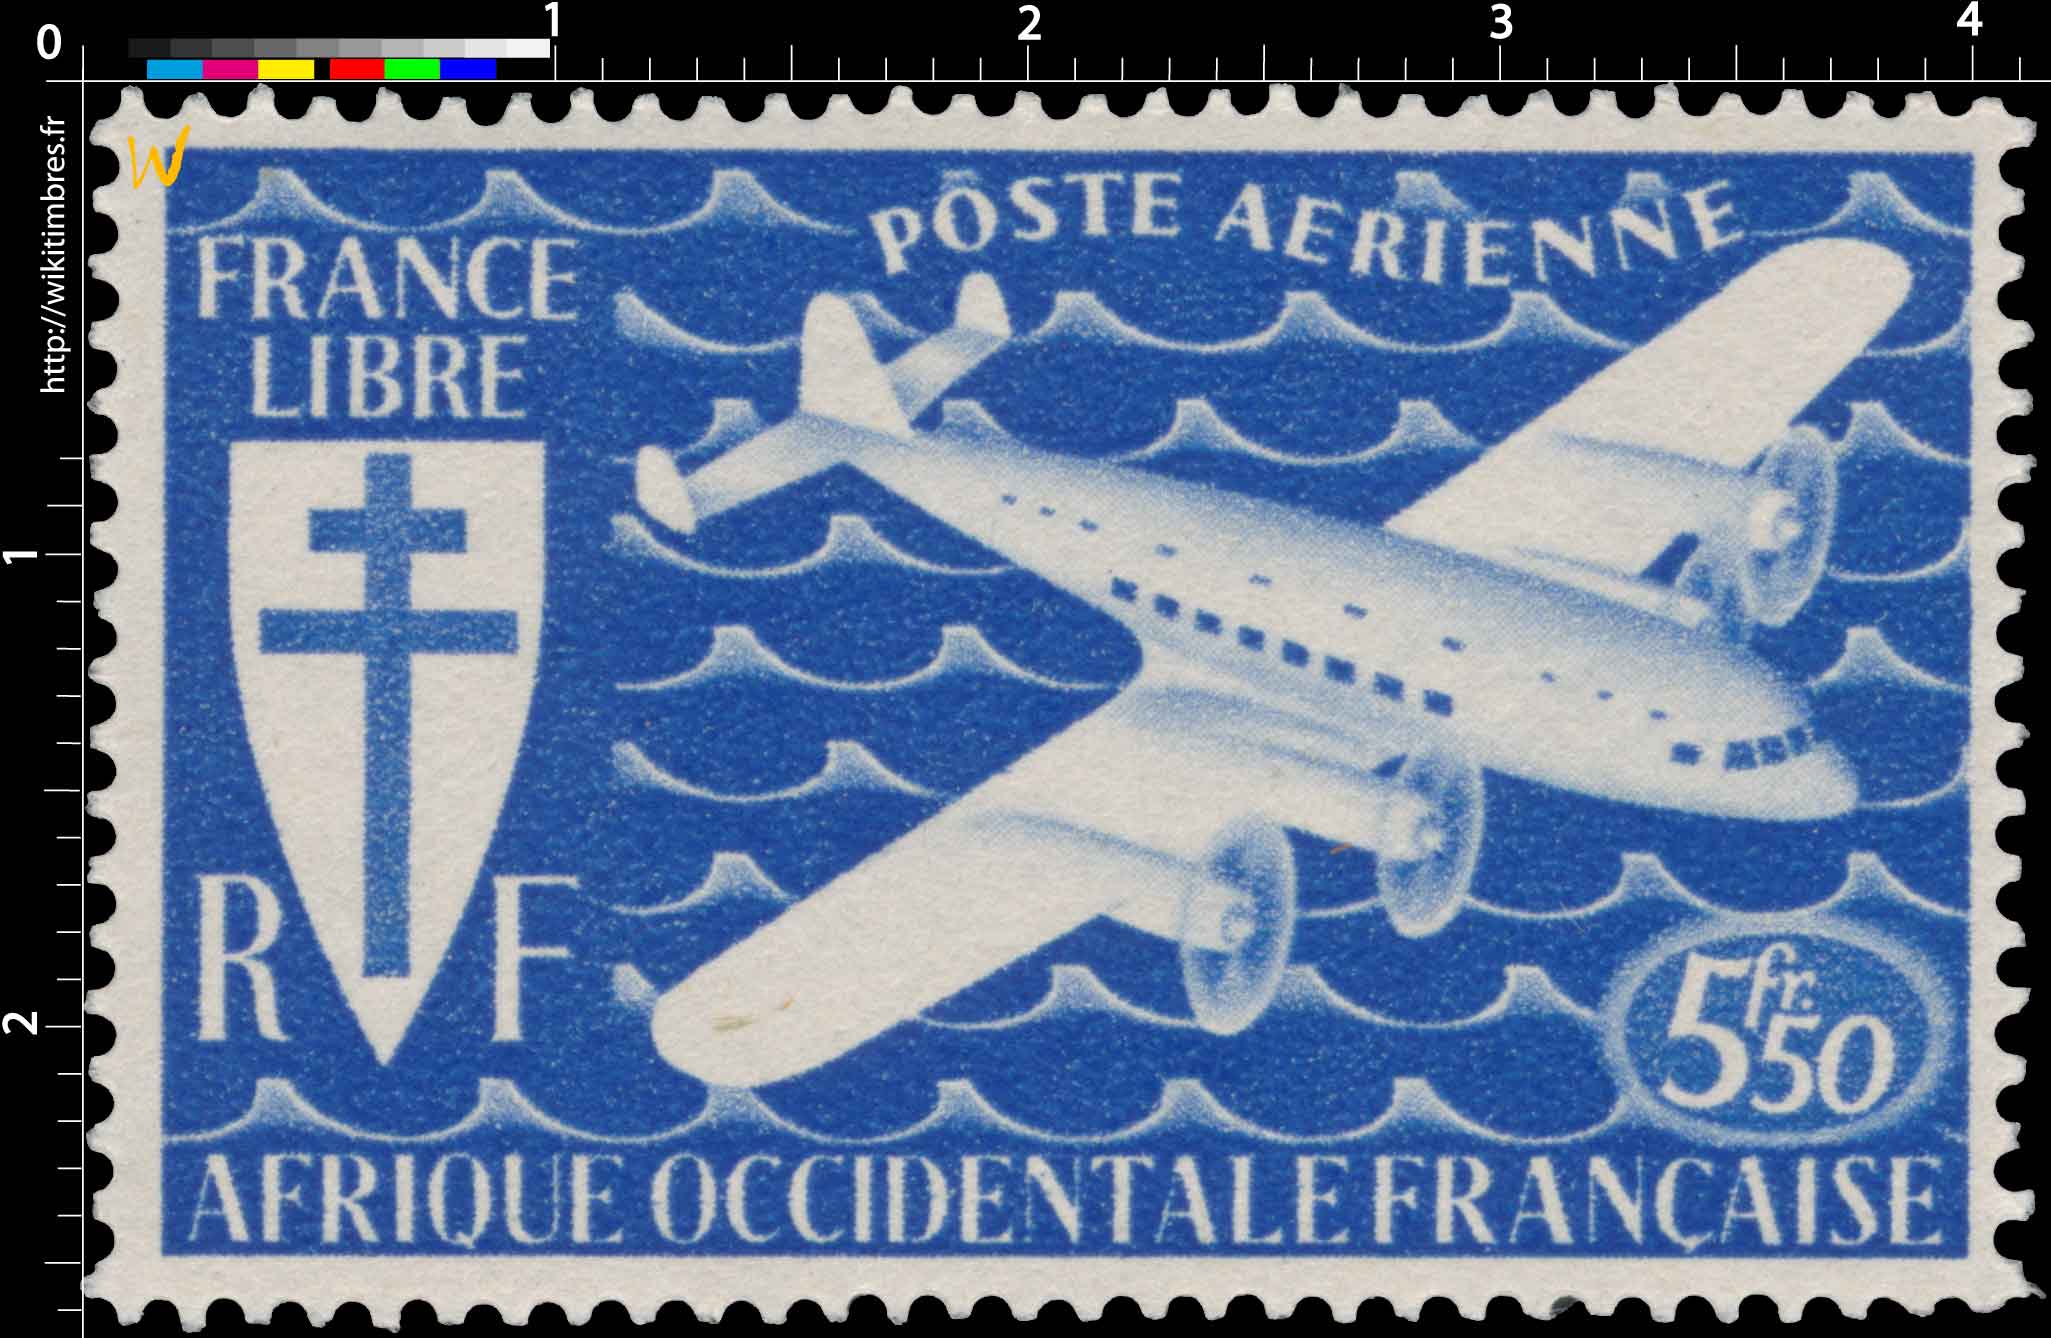 Afrique Occidentale Française - France Libre